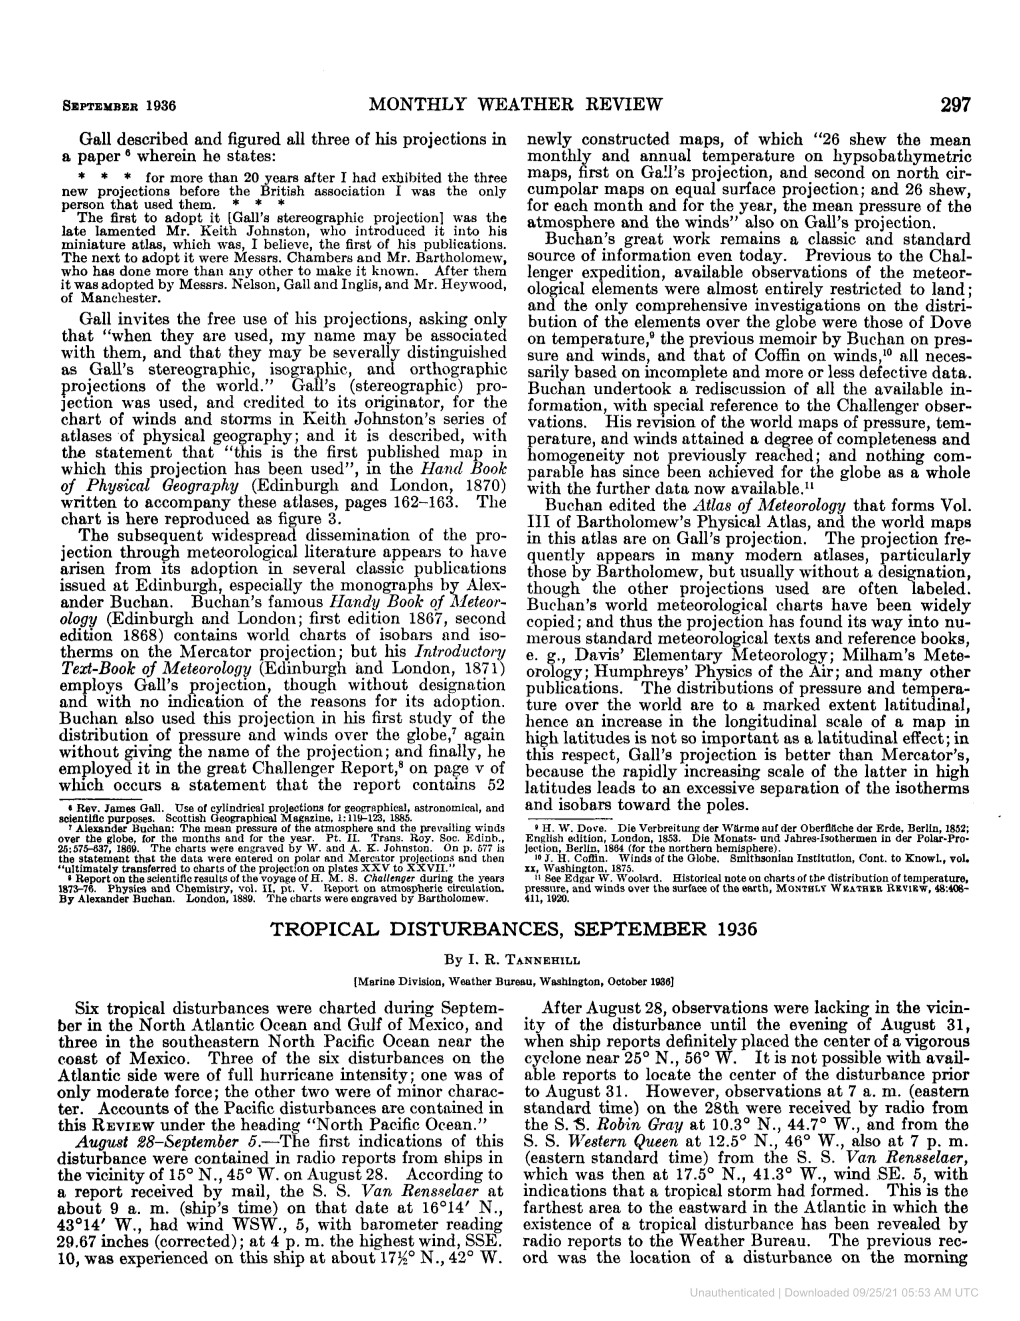 297 Tropical Disturbances, September 1936